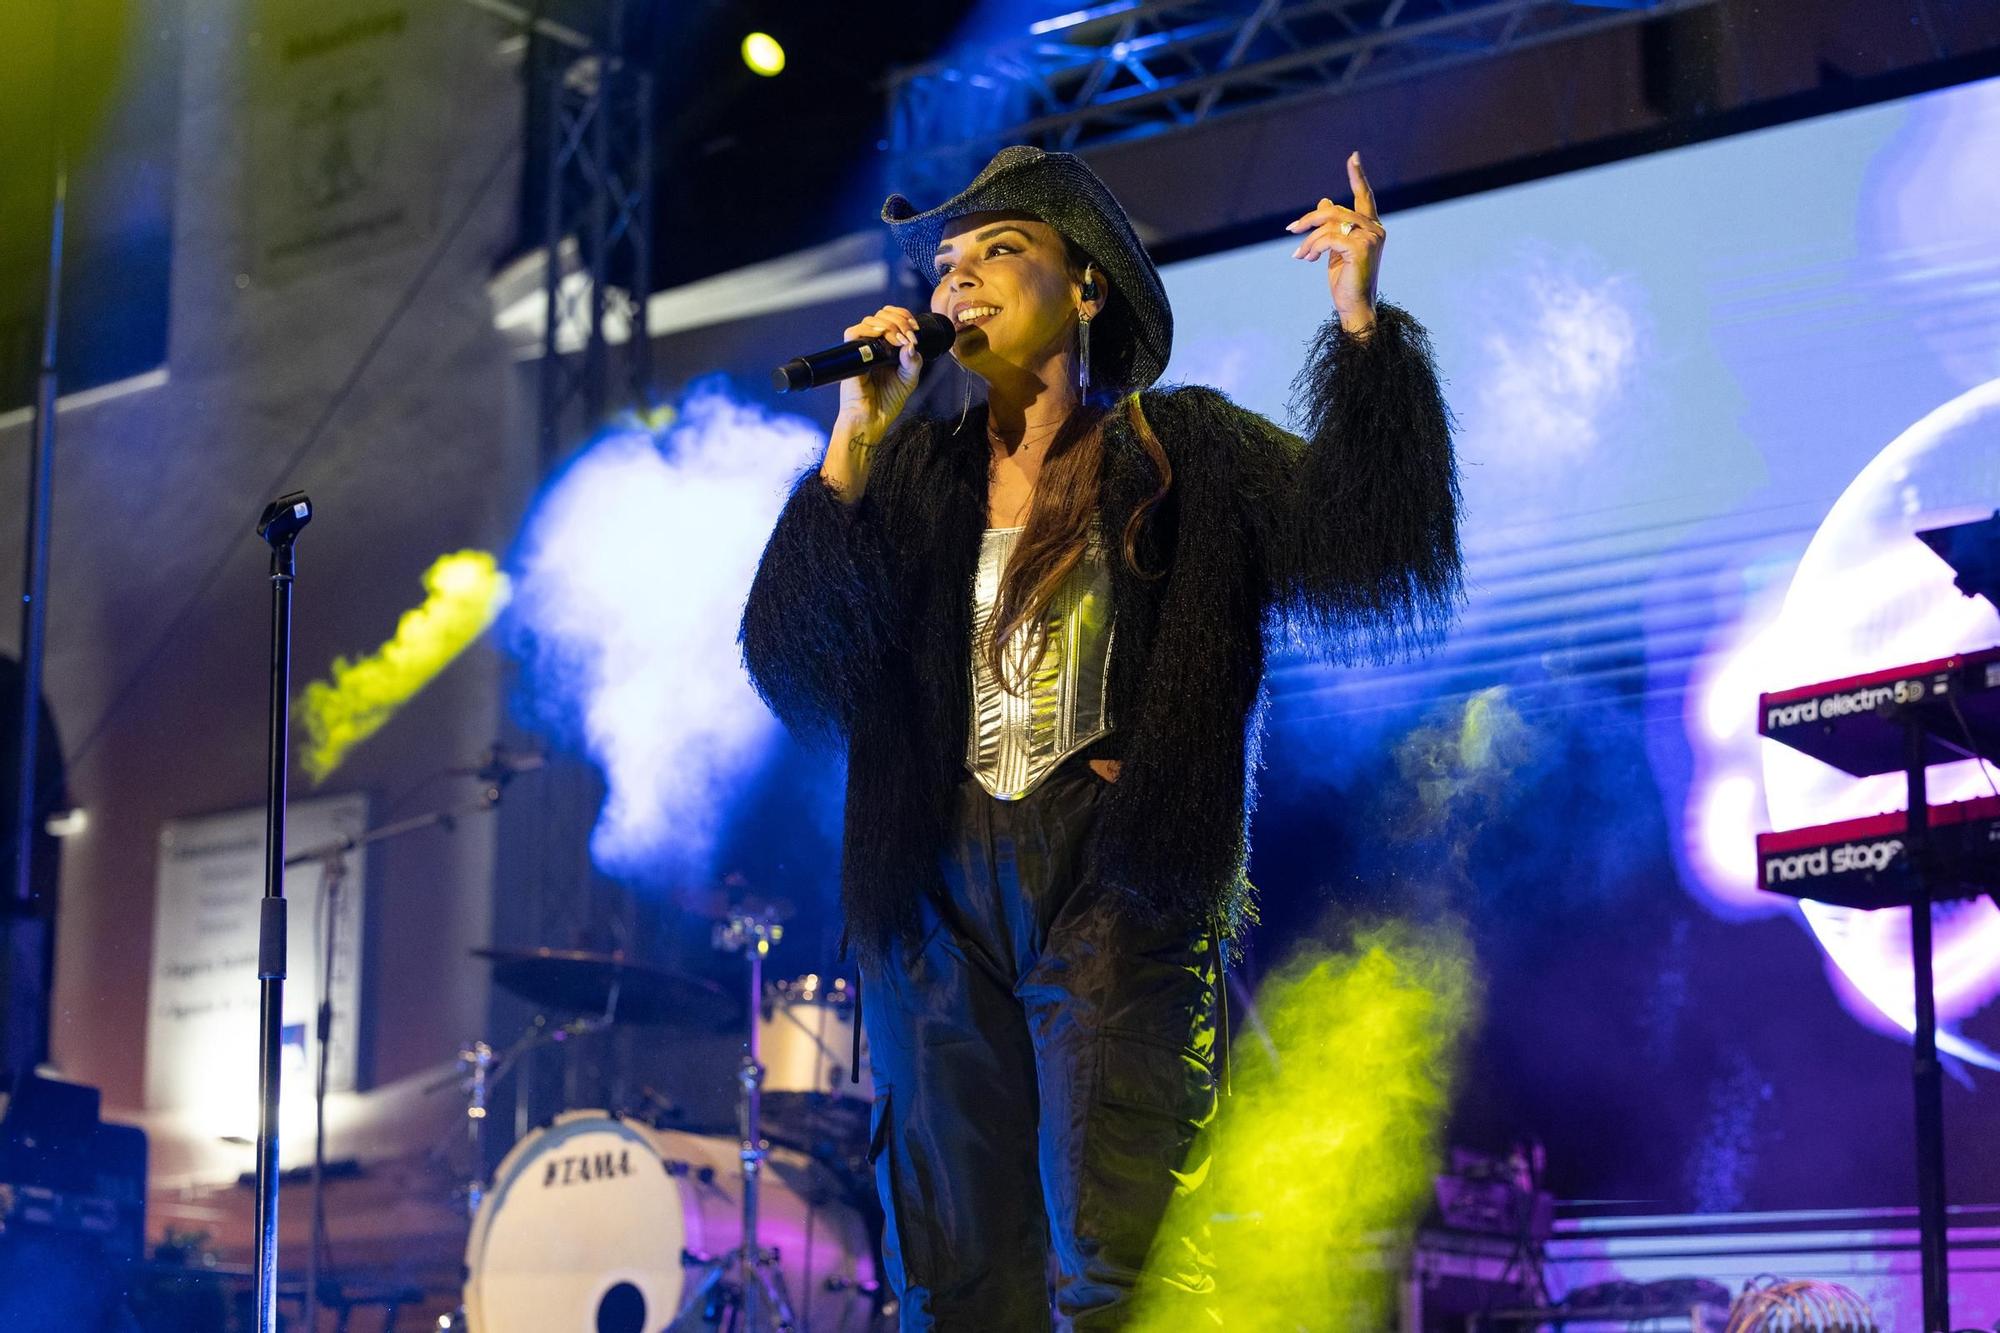 Galería: Mira aquí todas las fotos del concierto de Chenoa en Ibiza